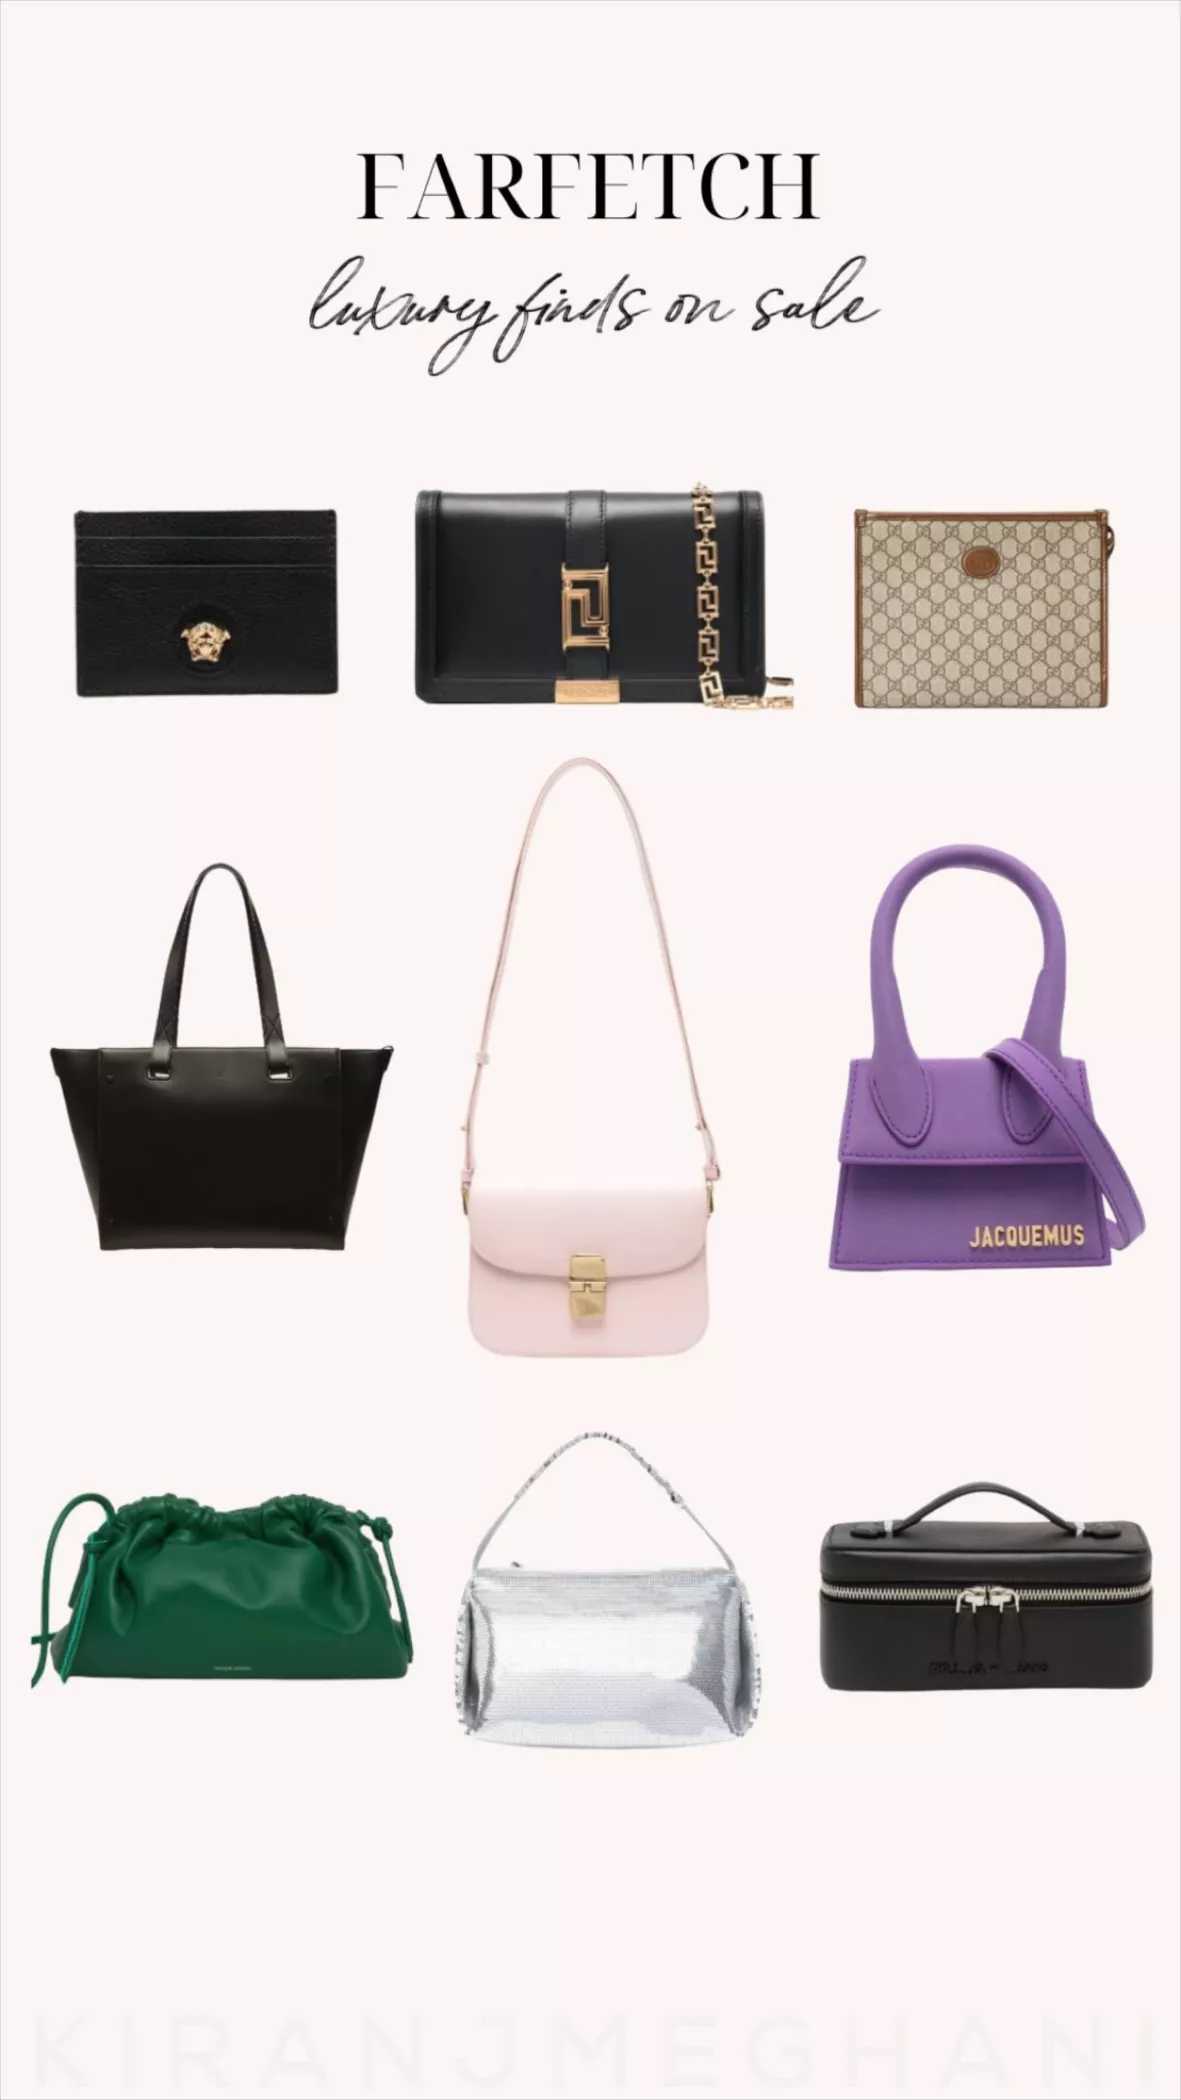 Designer Luggage for Women - FARFETCH